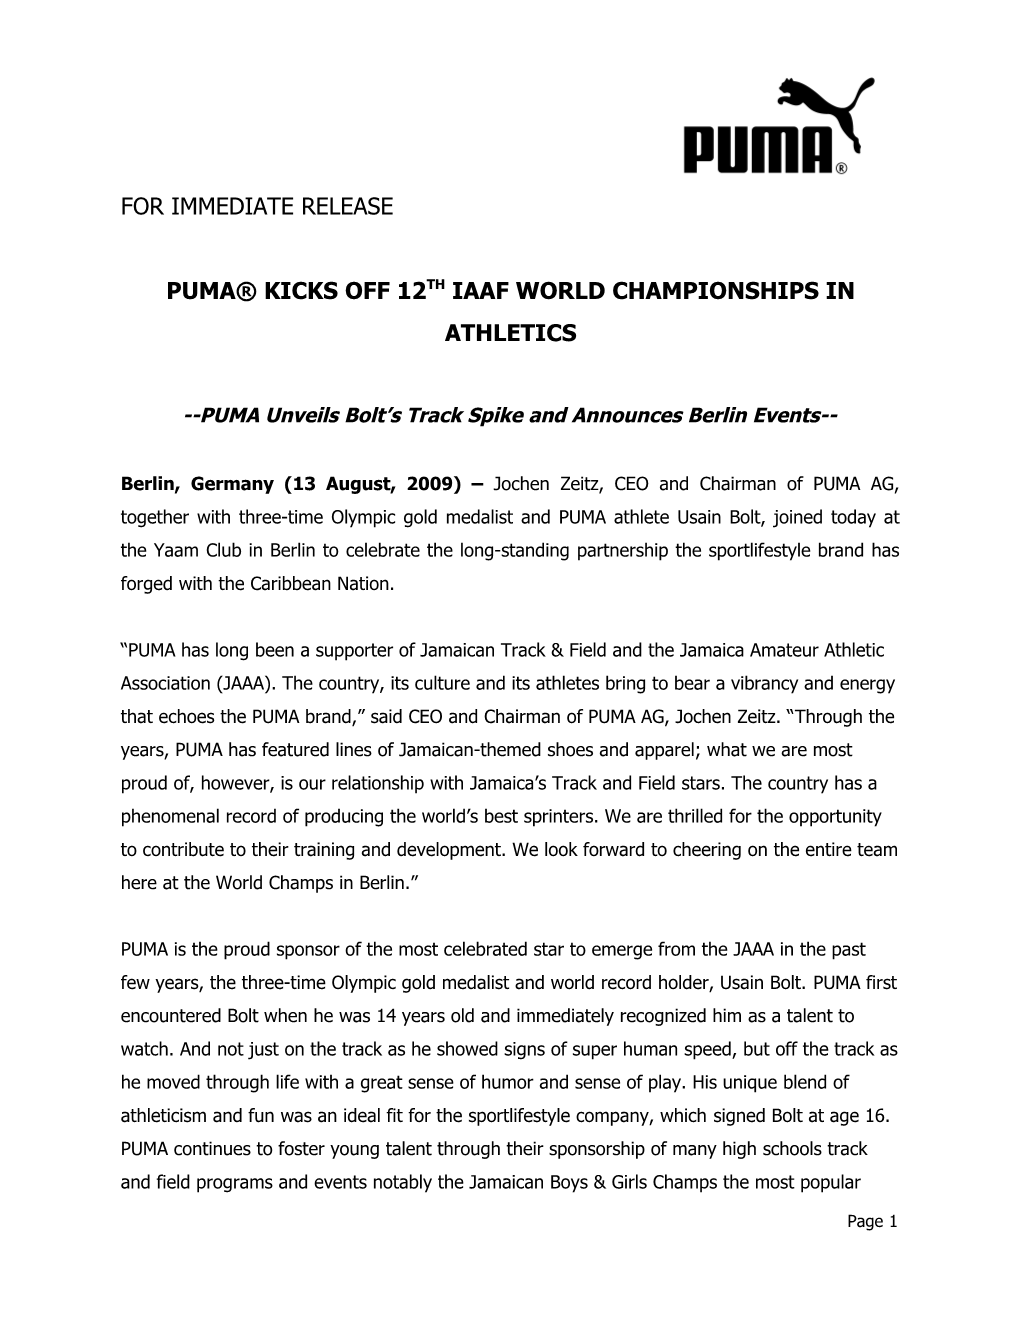 Puma Kicks Off 12Th Iaaf World Championships in Athletics